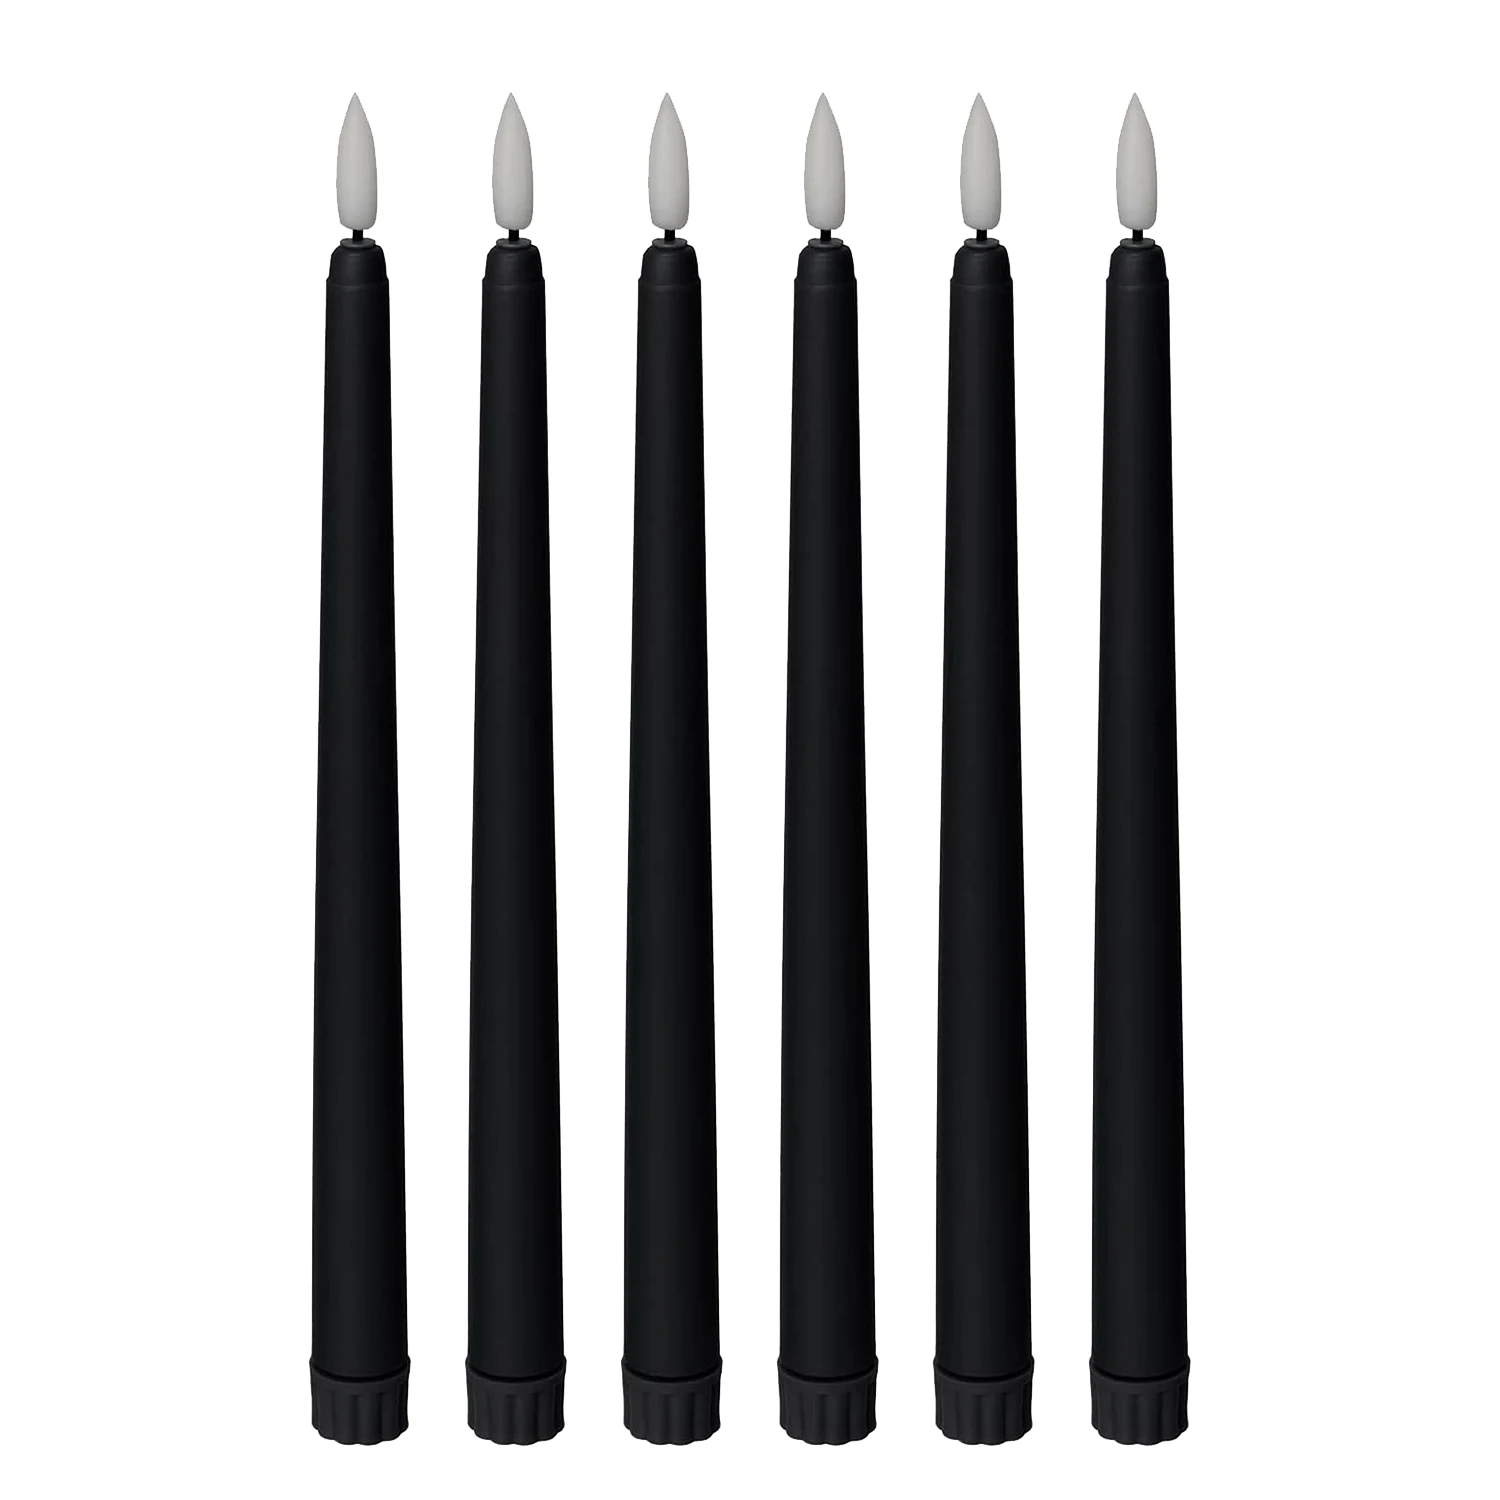 Беспламенные свечи в виде черного конуса - 11 дюймов (около 27,9 см), 6 штук, питание от аккумулятора, светодиодная вспышка с фитилем, Настройка времени